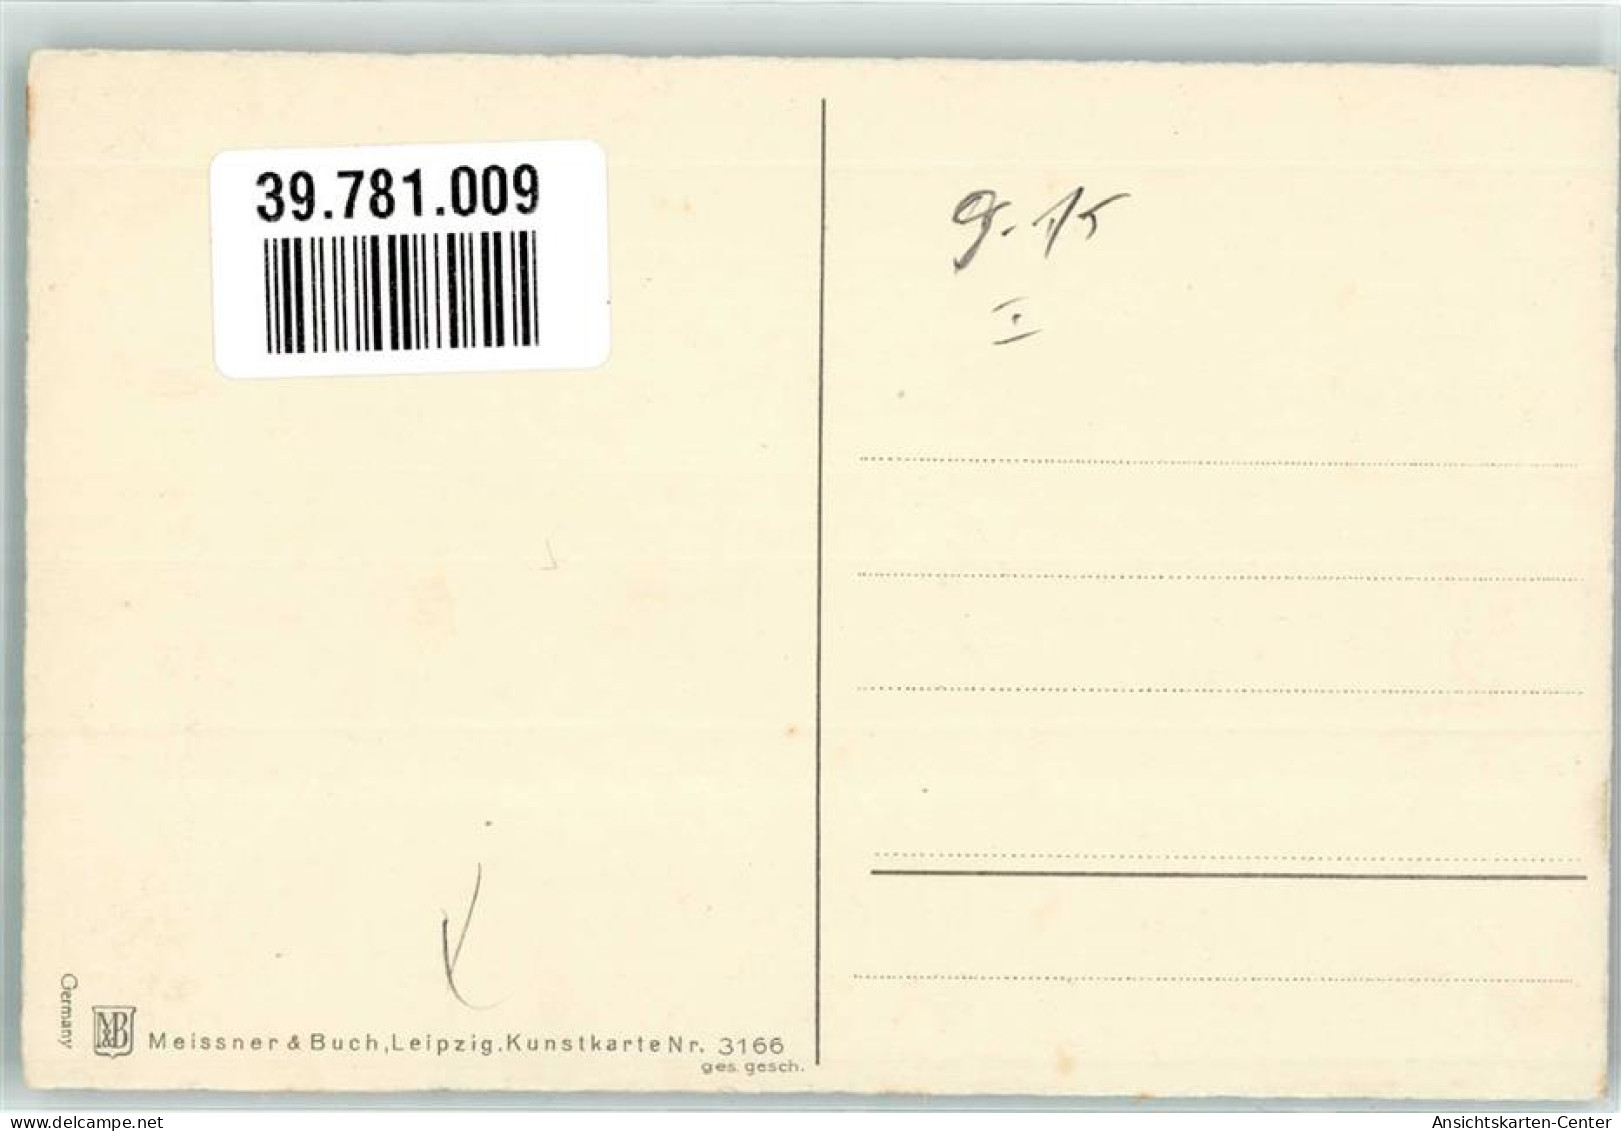 39781009 - Frau Paar Blumen Meissner U. Buch Nr.3166 - Anniversaire